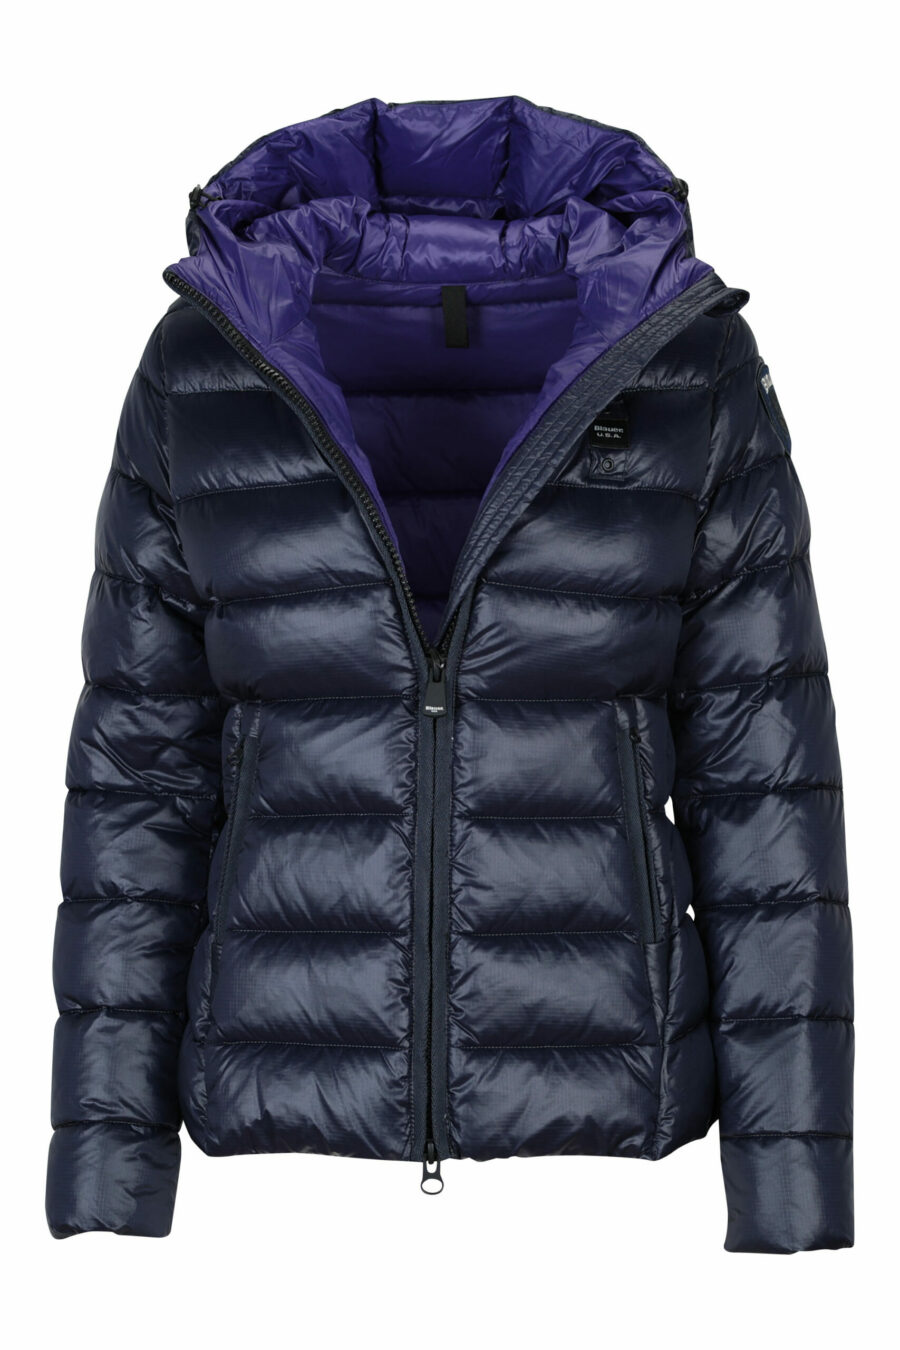 Veste à capuche bleue à doublure droite et intérieur violet avec patch logo - 8058610644932 à l'échelle 1